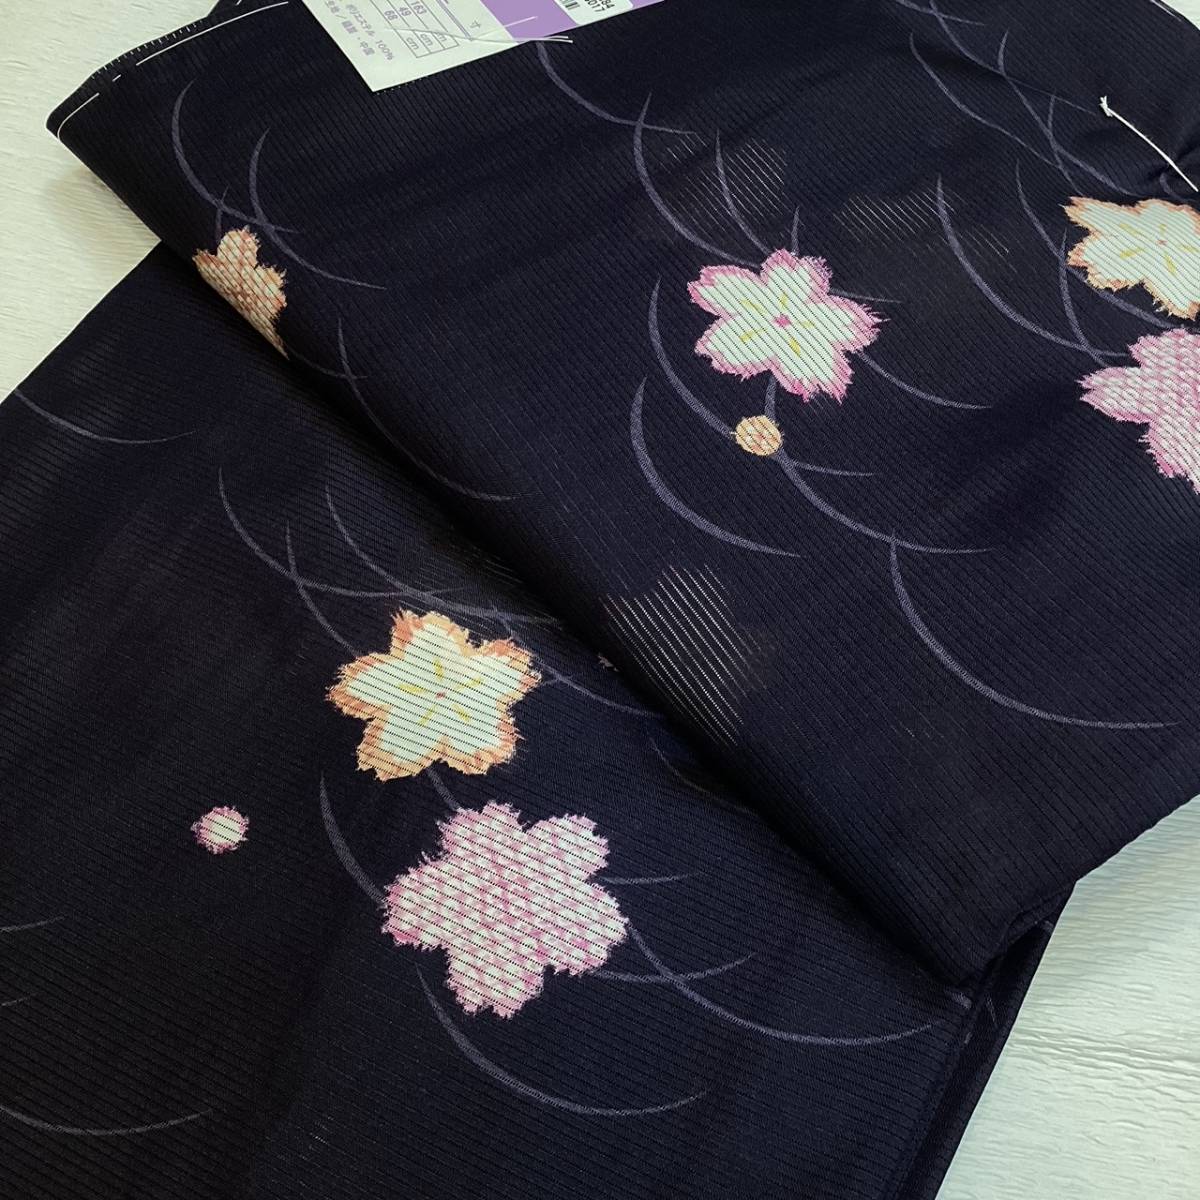 洗える着物 wk973 絽夏物小紋 お仕立て上がり 花柄 洗濯可能 新品 送料込み